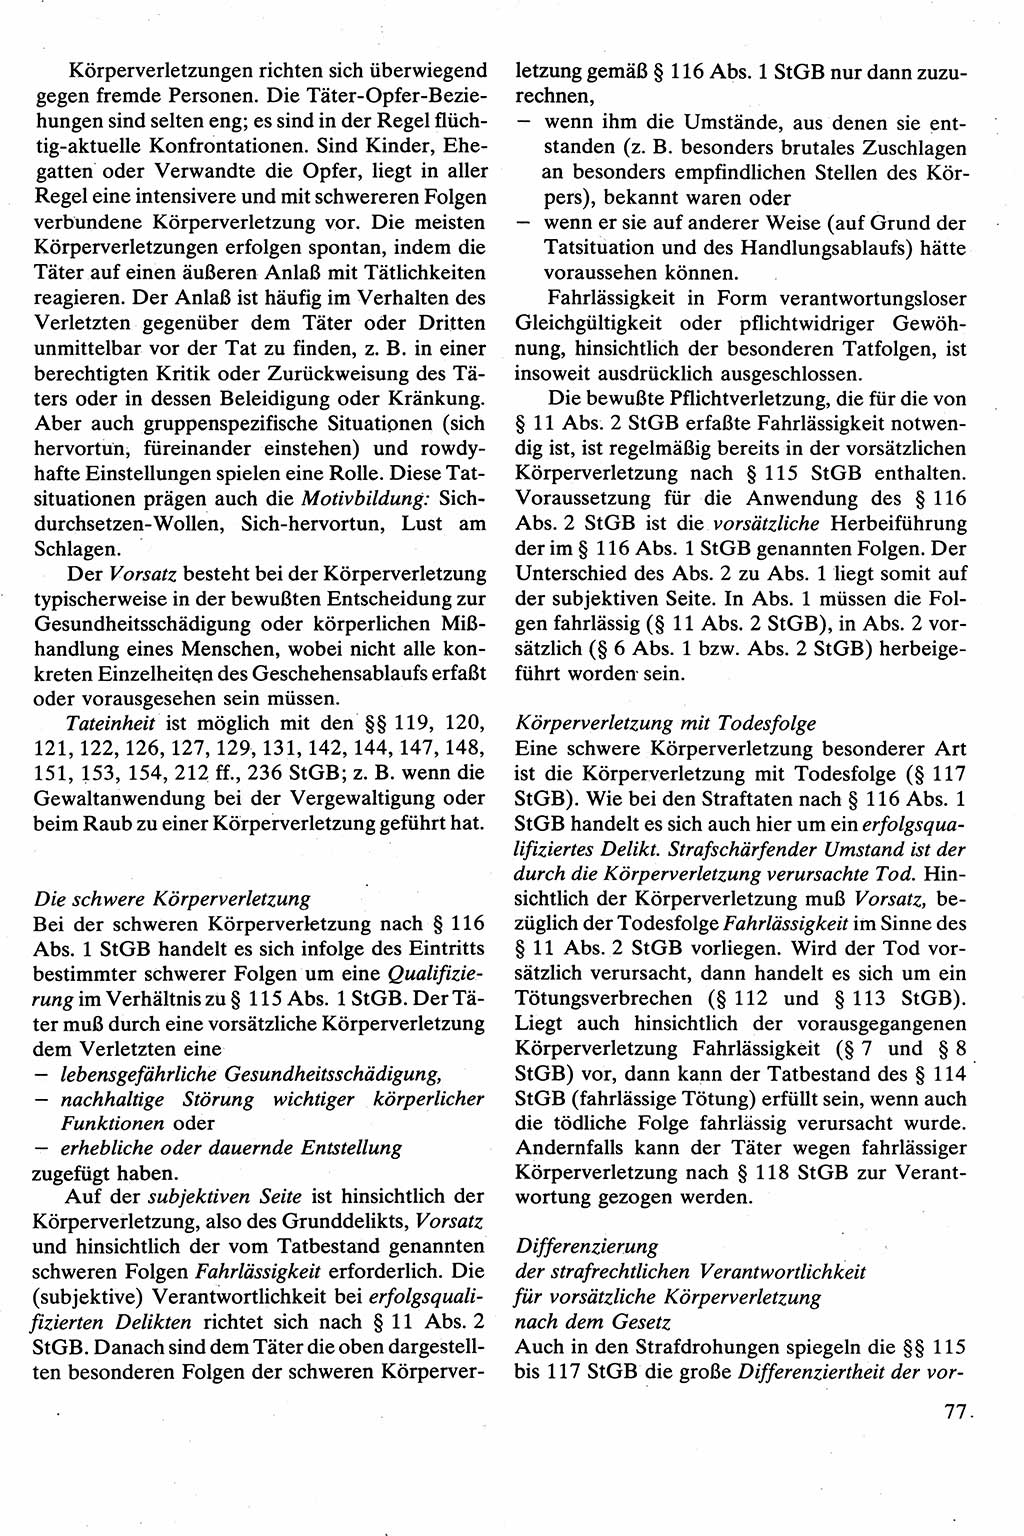 Strafrecht [Deutsche Demokratische Republik (DDR)], Besonderer Teil, Lehrbuch 1981, Seite 77 (Strafr. DDR BT Lb. 1981, S. 77)